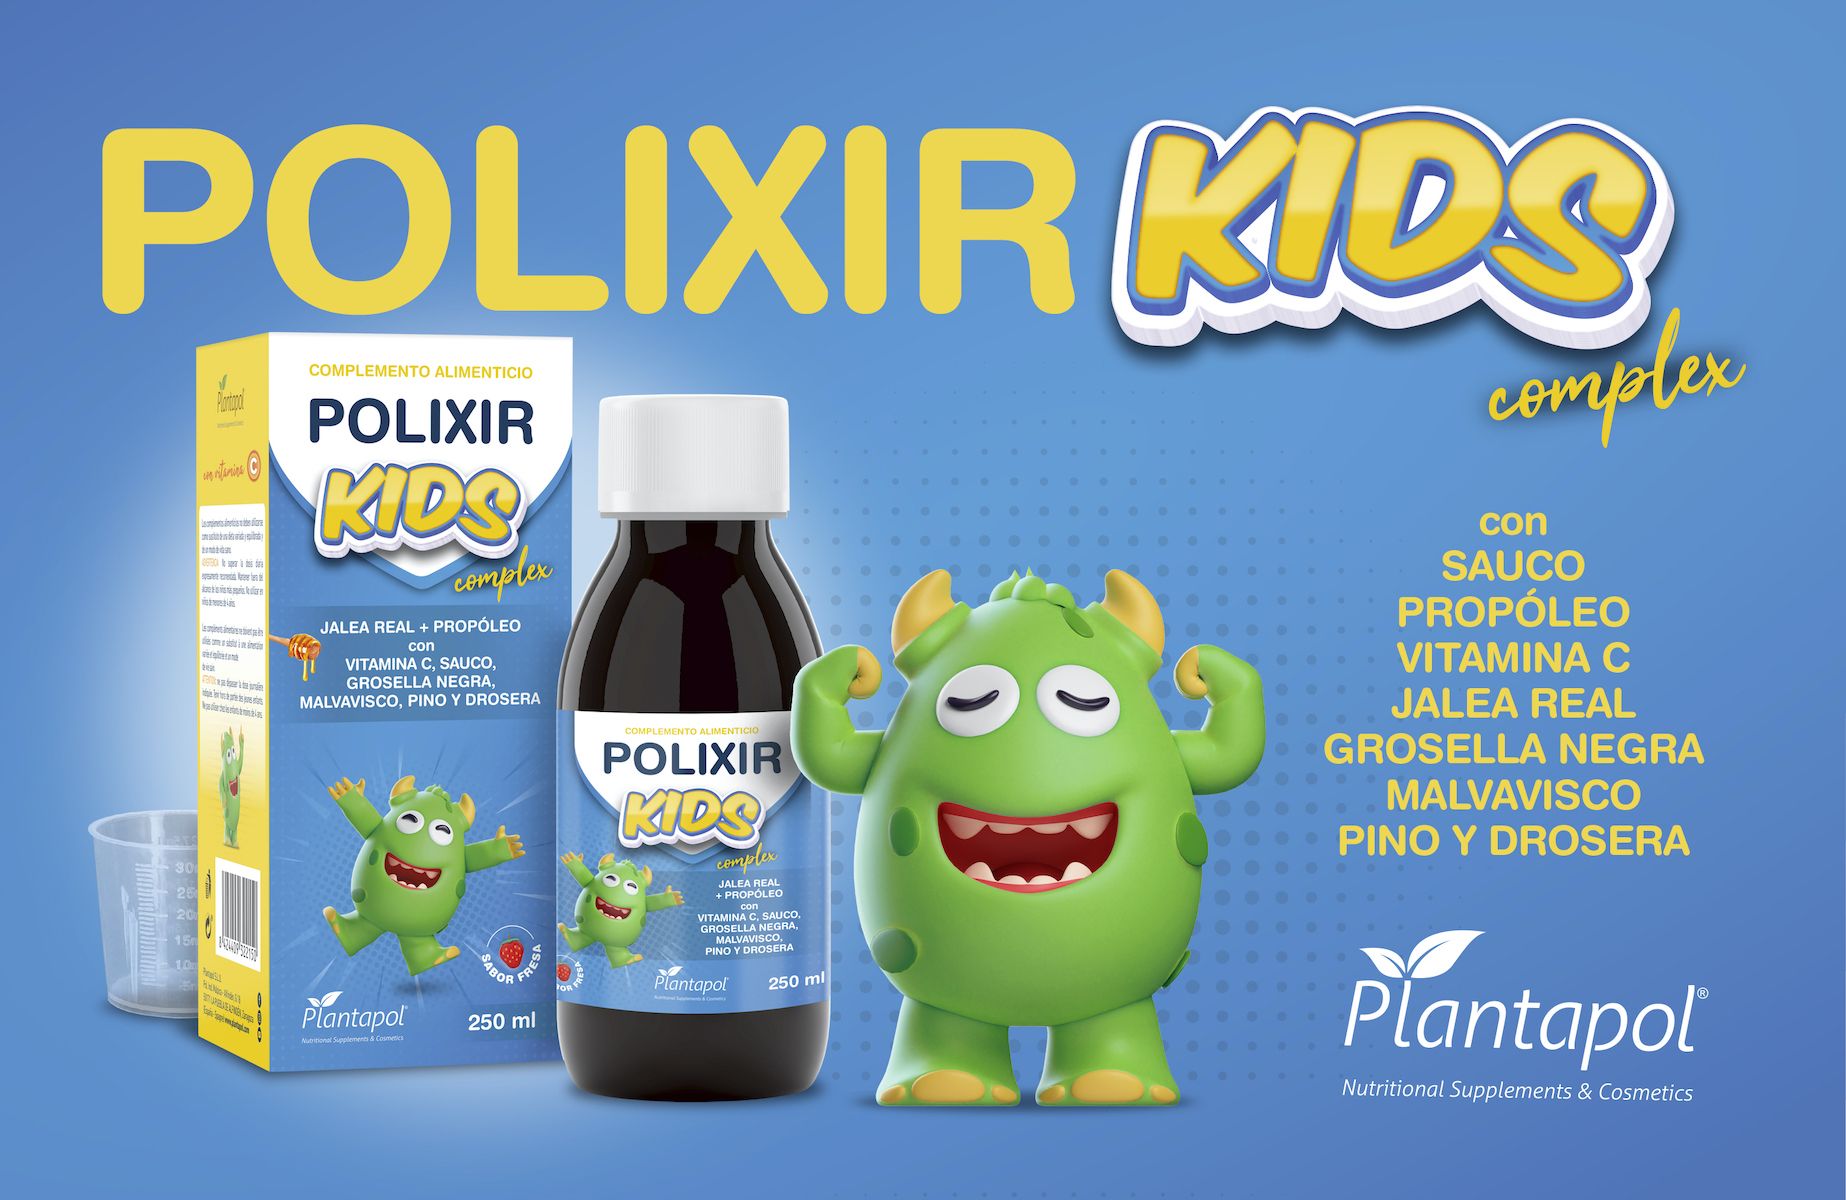 POLIXIR KIDS infant syrup